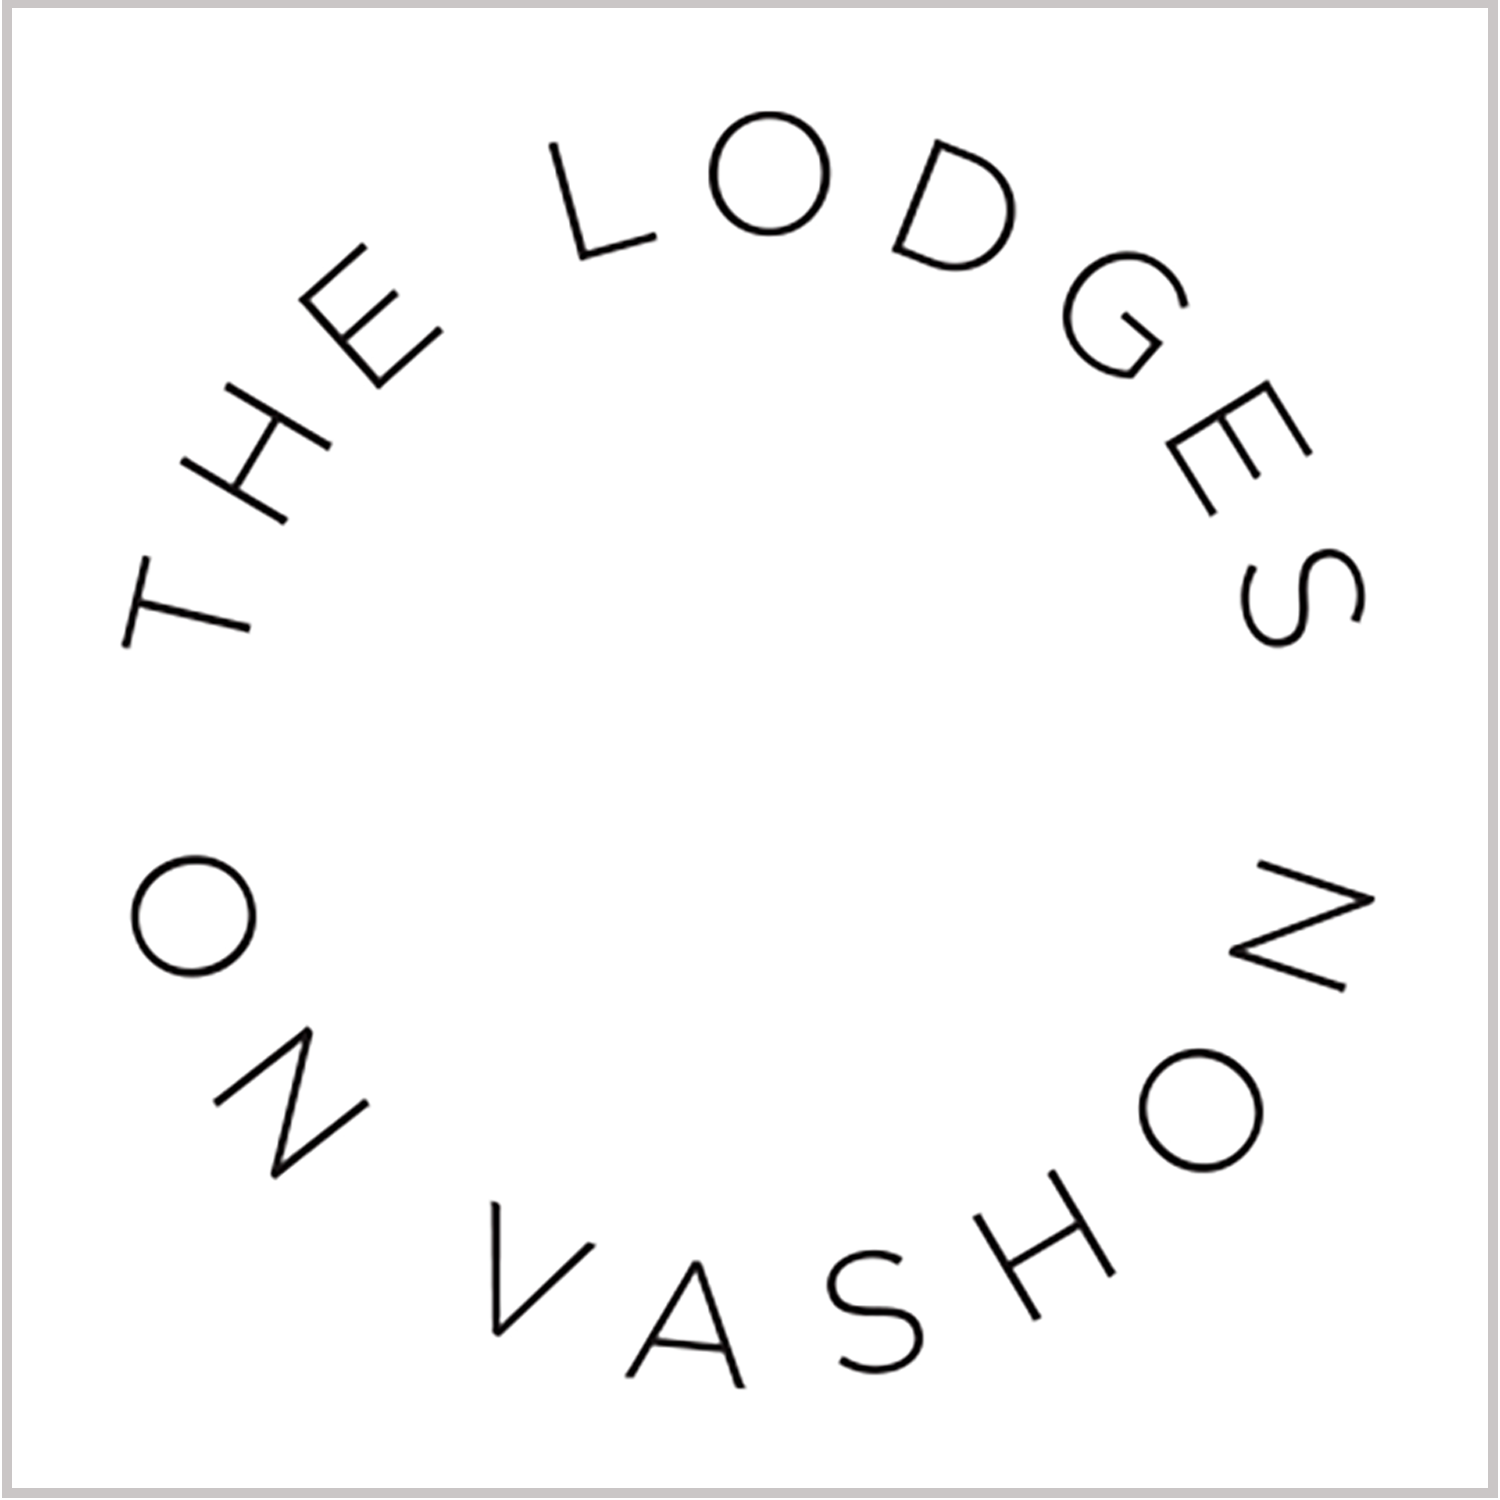 Lodges on Vashon